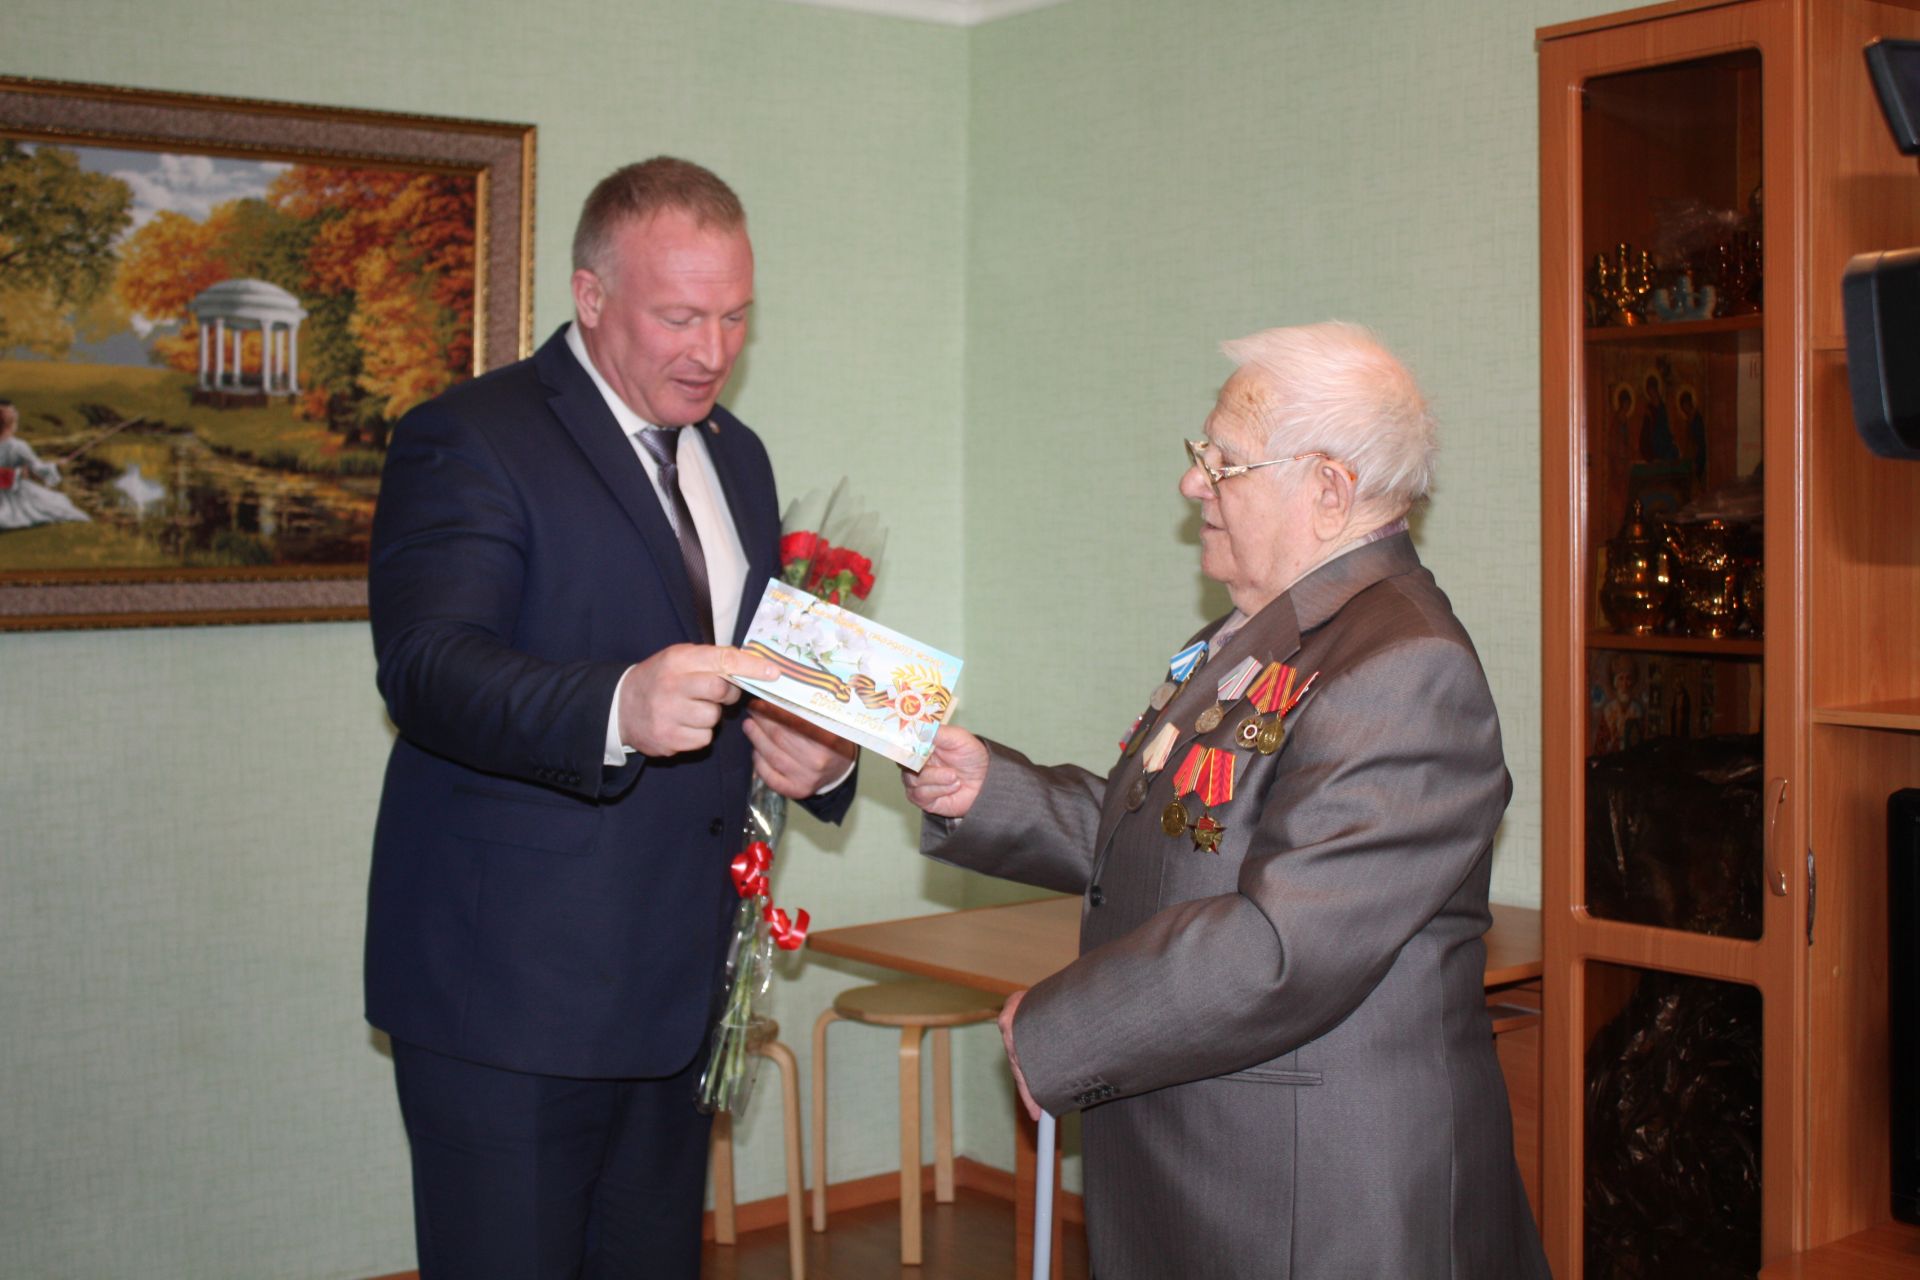 Дмитрий Иванов в преддверии Дня Победы поздравил ветерана Великой Отечественной войны